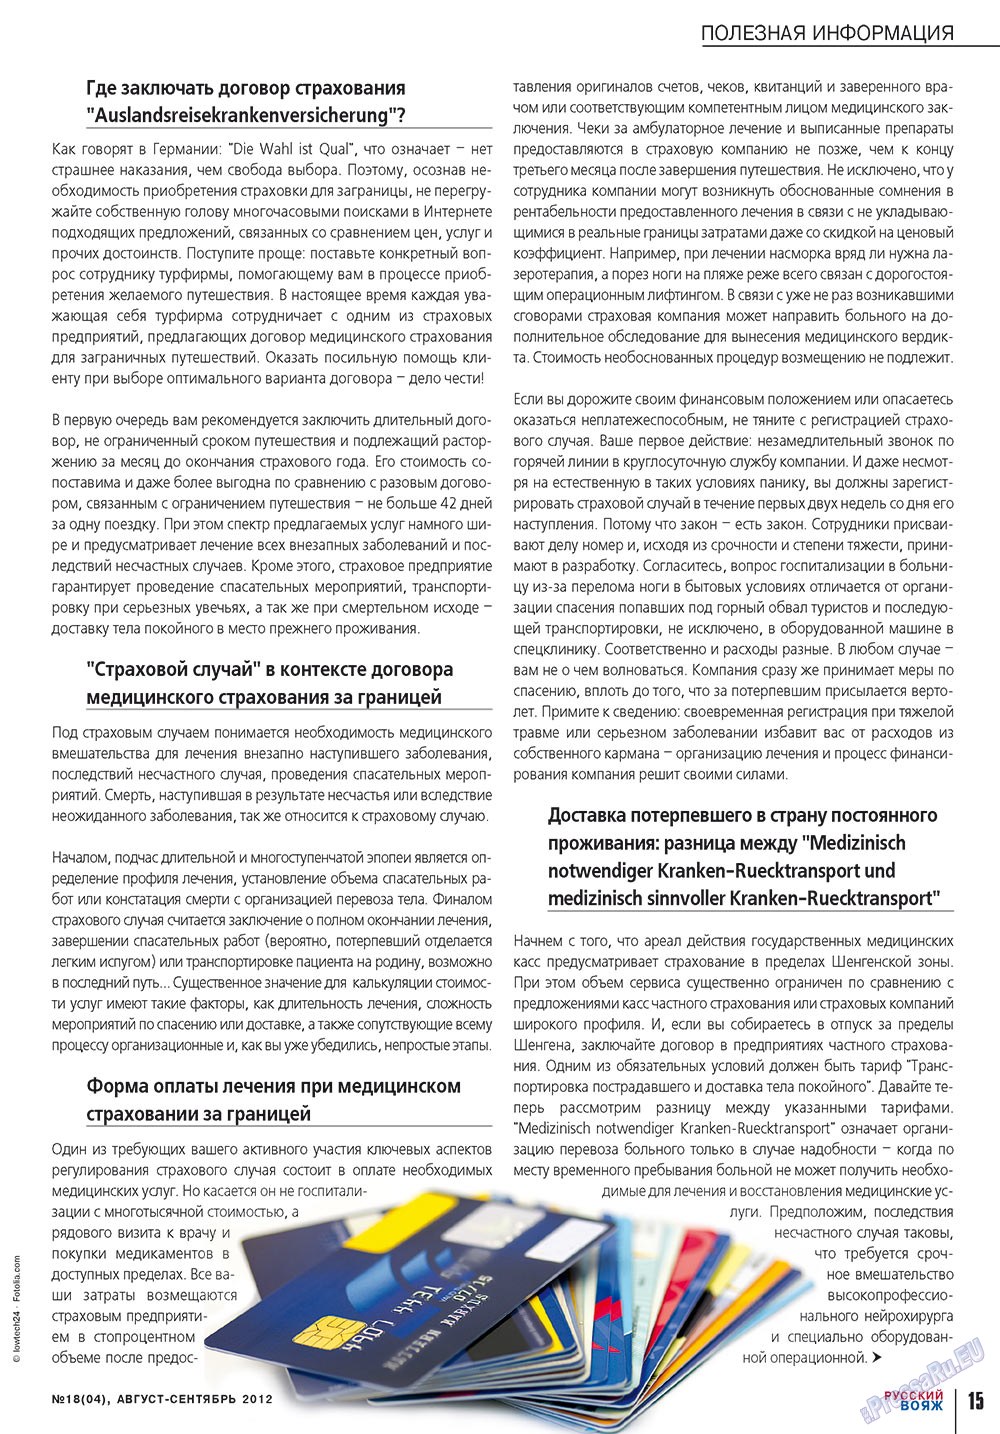 Русский вояж (журнал). 2012 год, номер 18, стр. 15